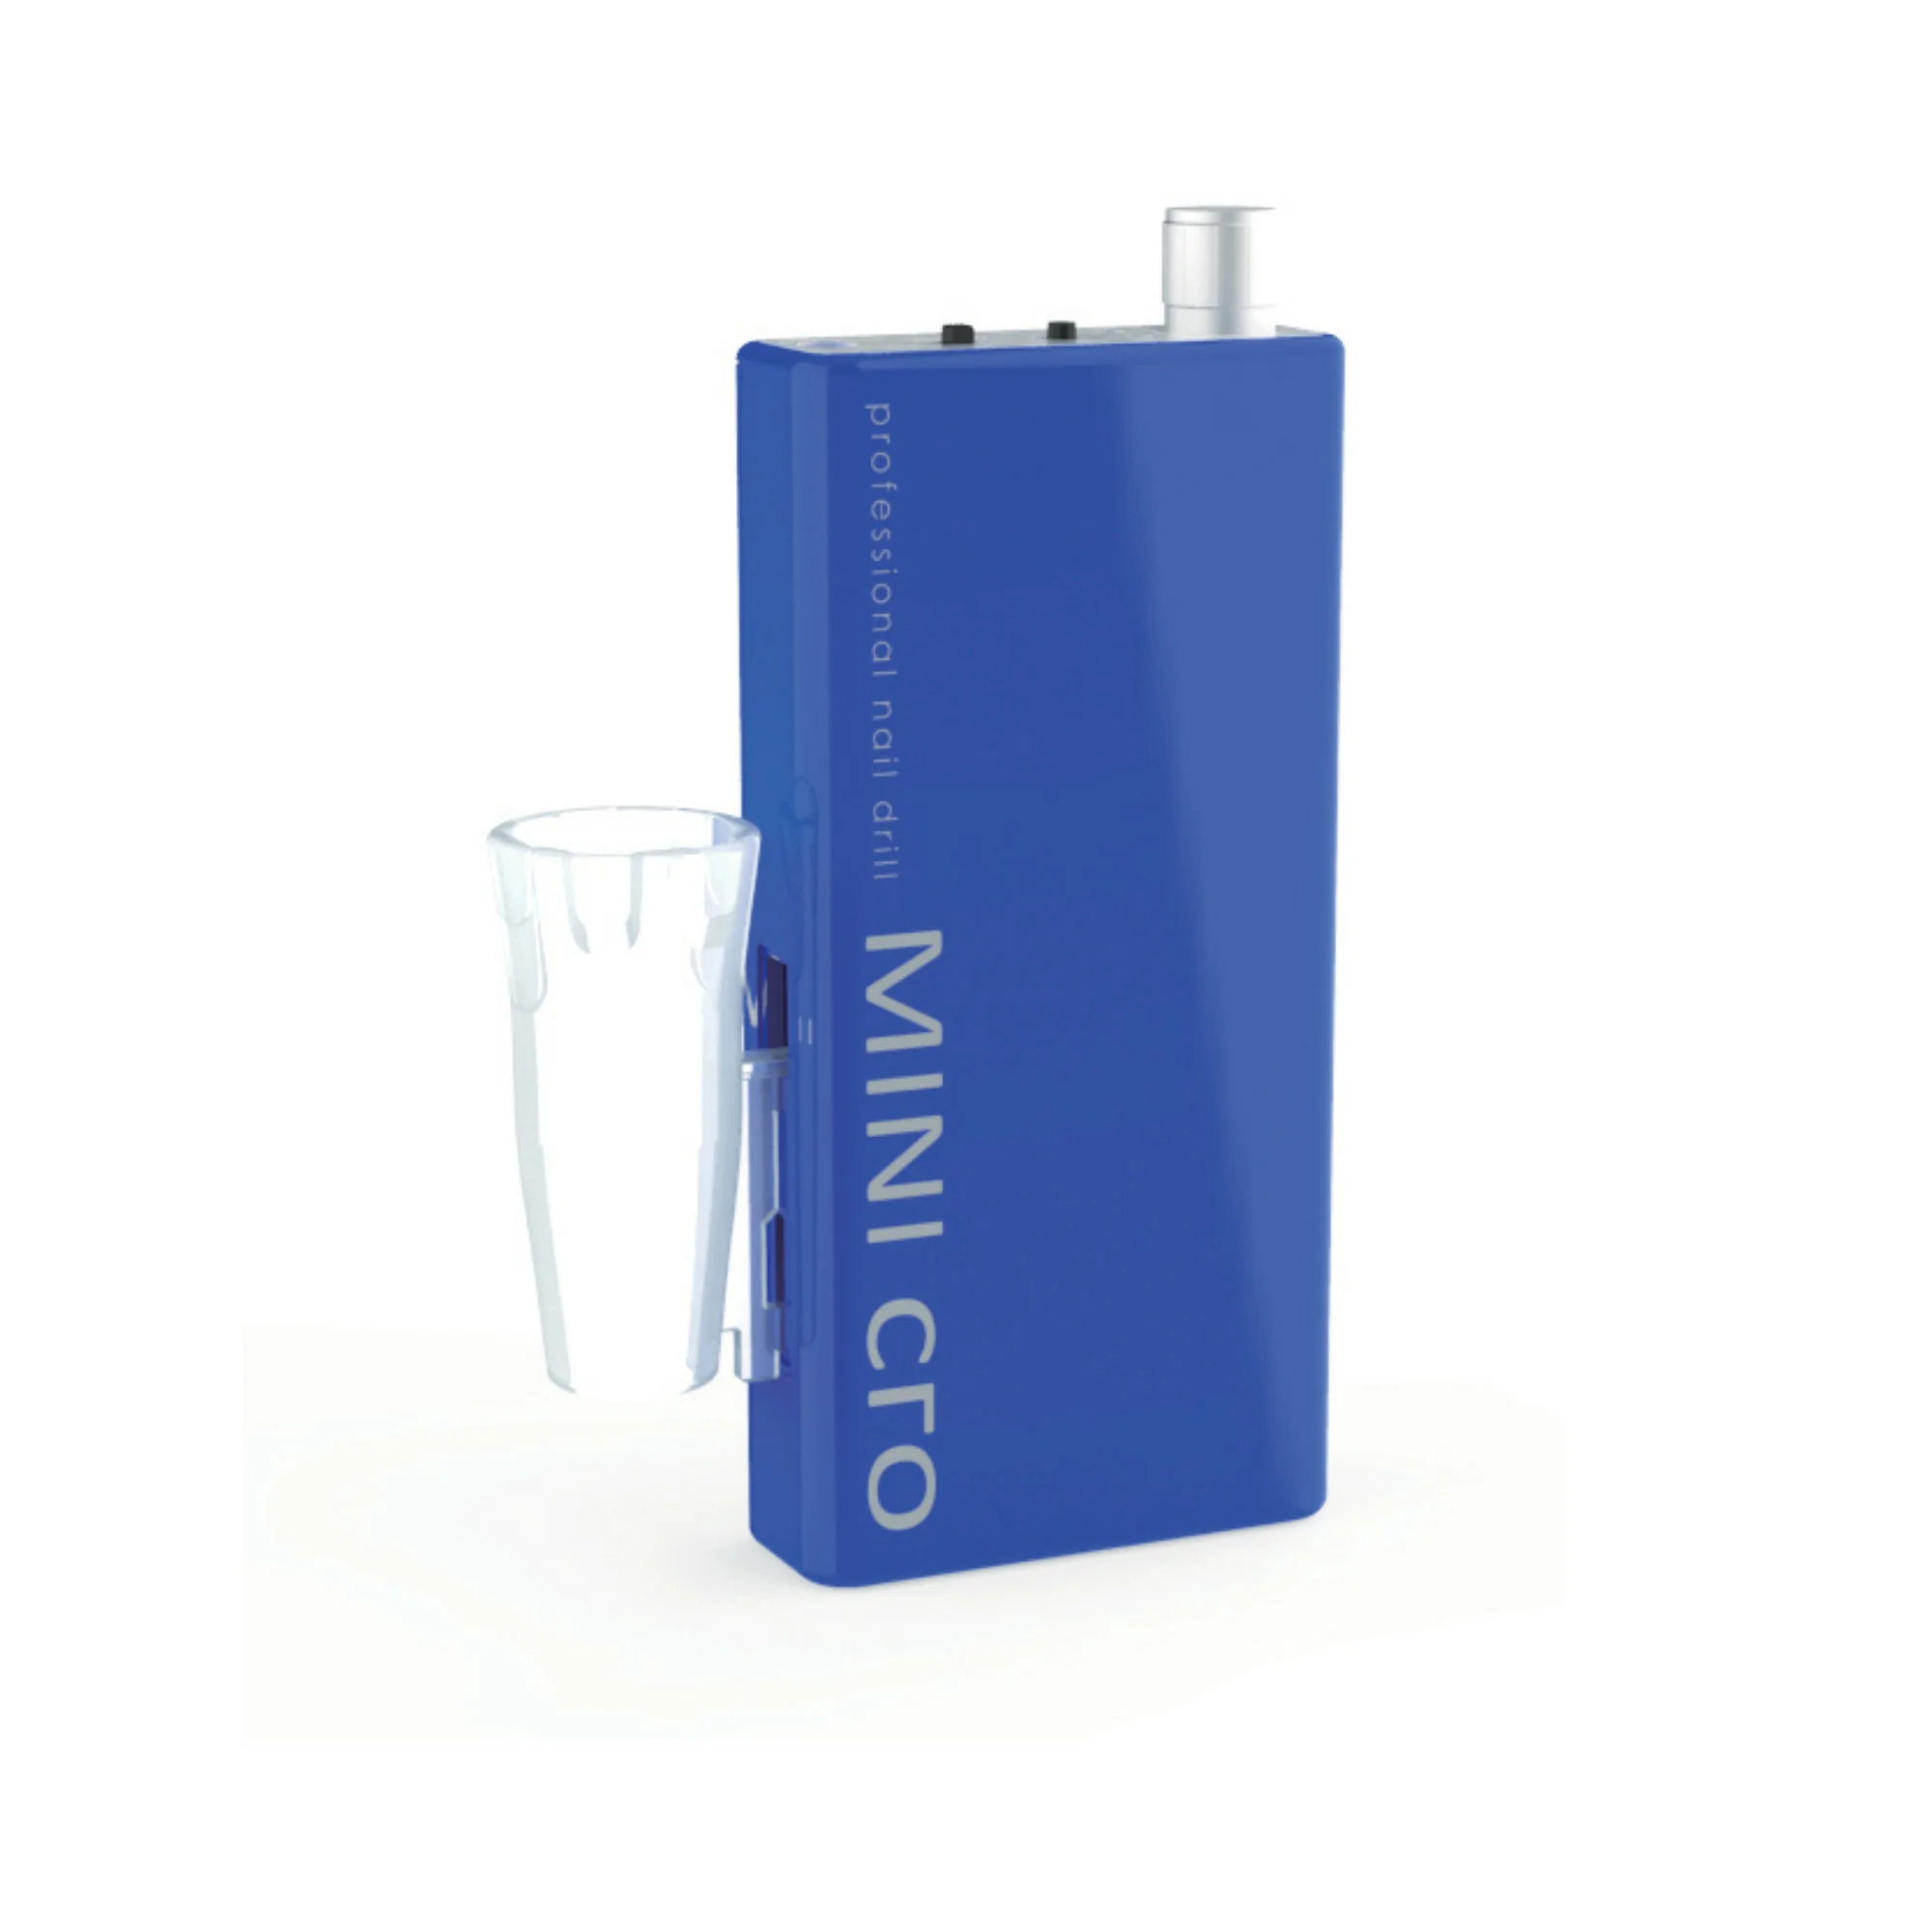 Mini-cro - Micromoteur portable - Bleu - 30 000 tr/min - Avec pièce à main démontable